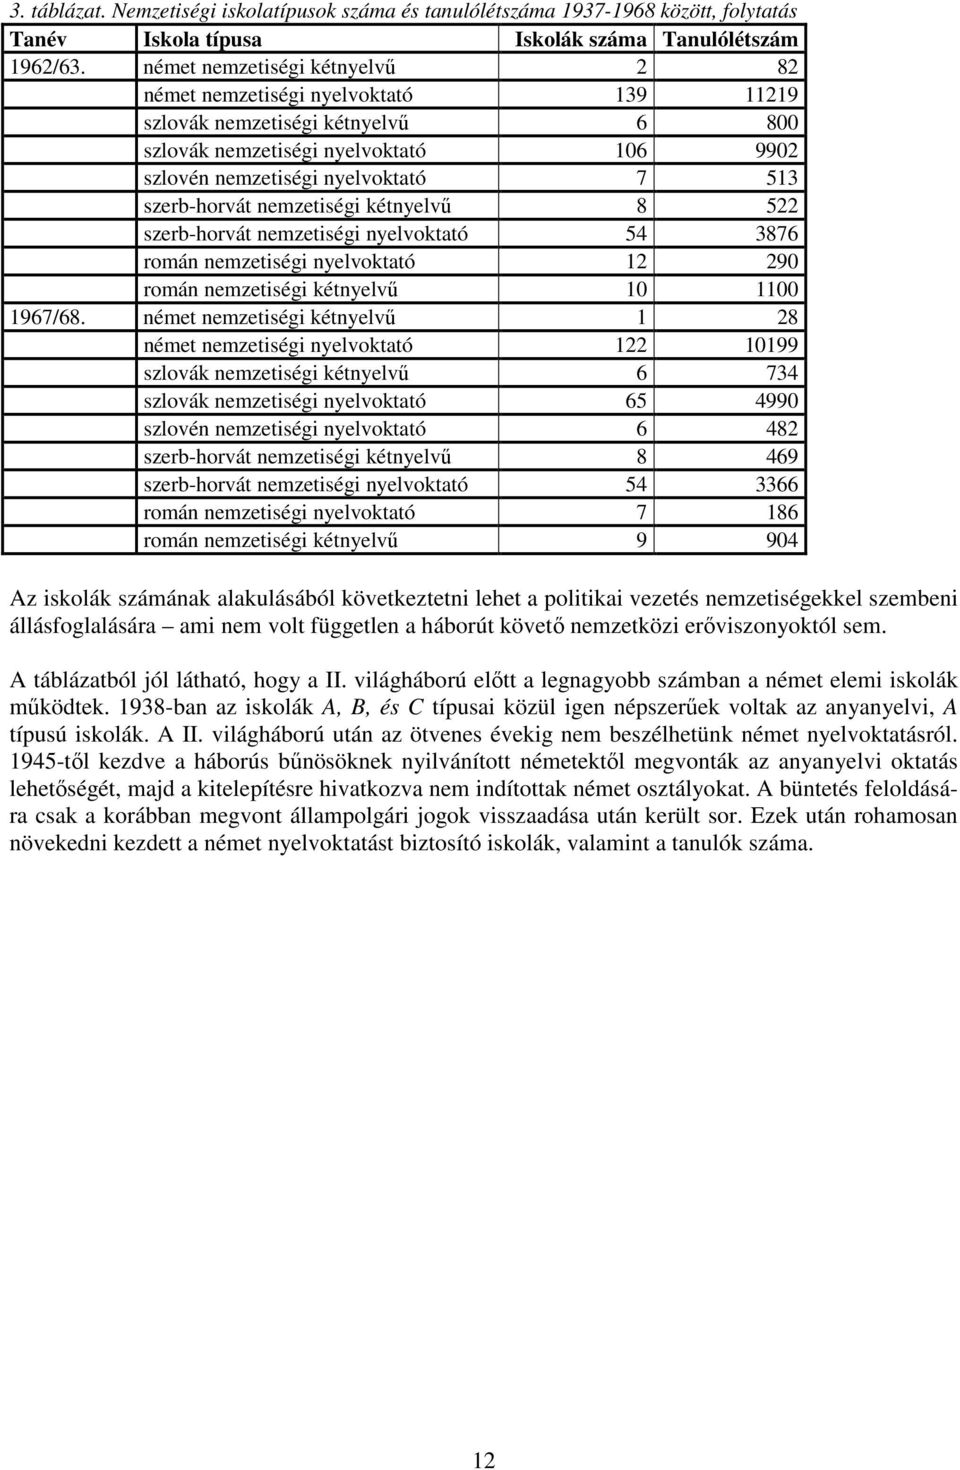 szerb-horvát nemzetiségi kétnyelvő 8 522 szerb-horvát nemzetiségi nyelvoktató 54 3876 román nemzetiségi nyelvoktató 12 290 román nemzetiségi kétnyelvő 10 1100 1967/68.